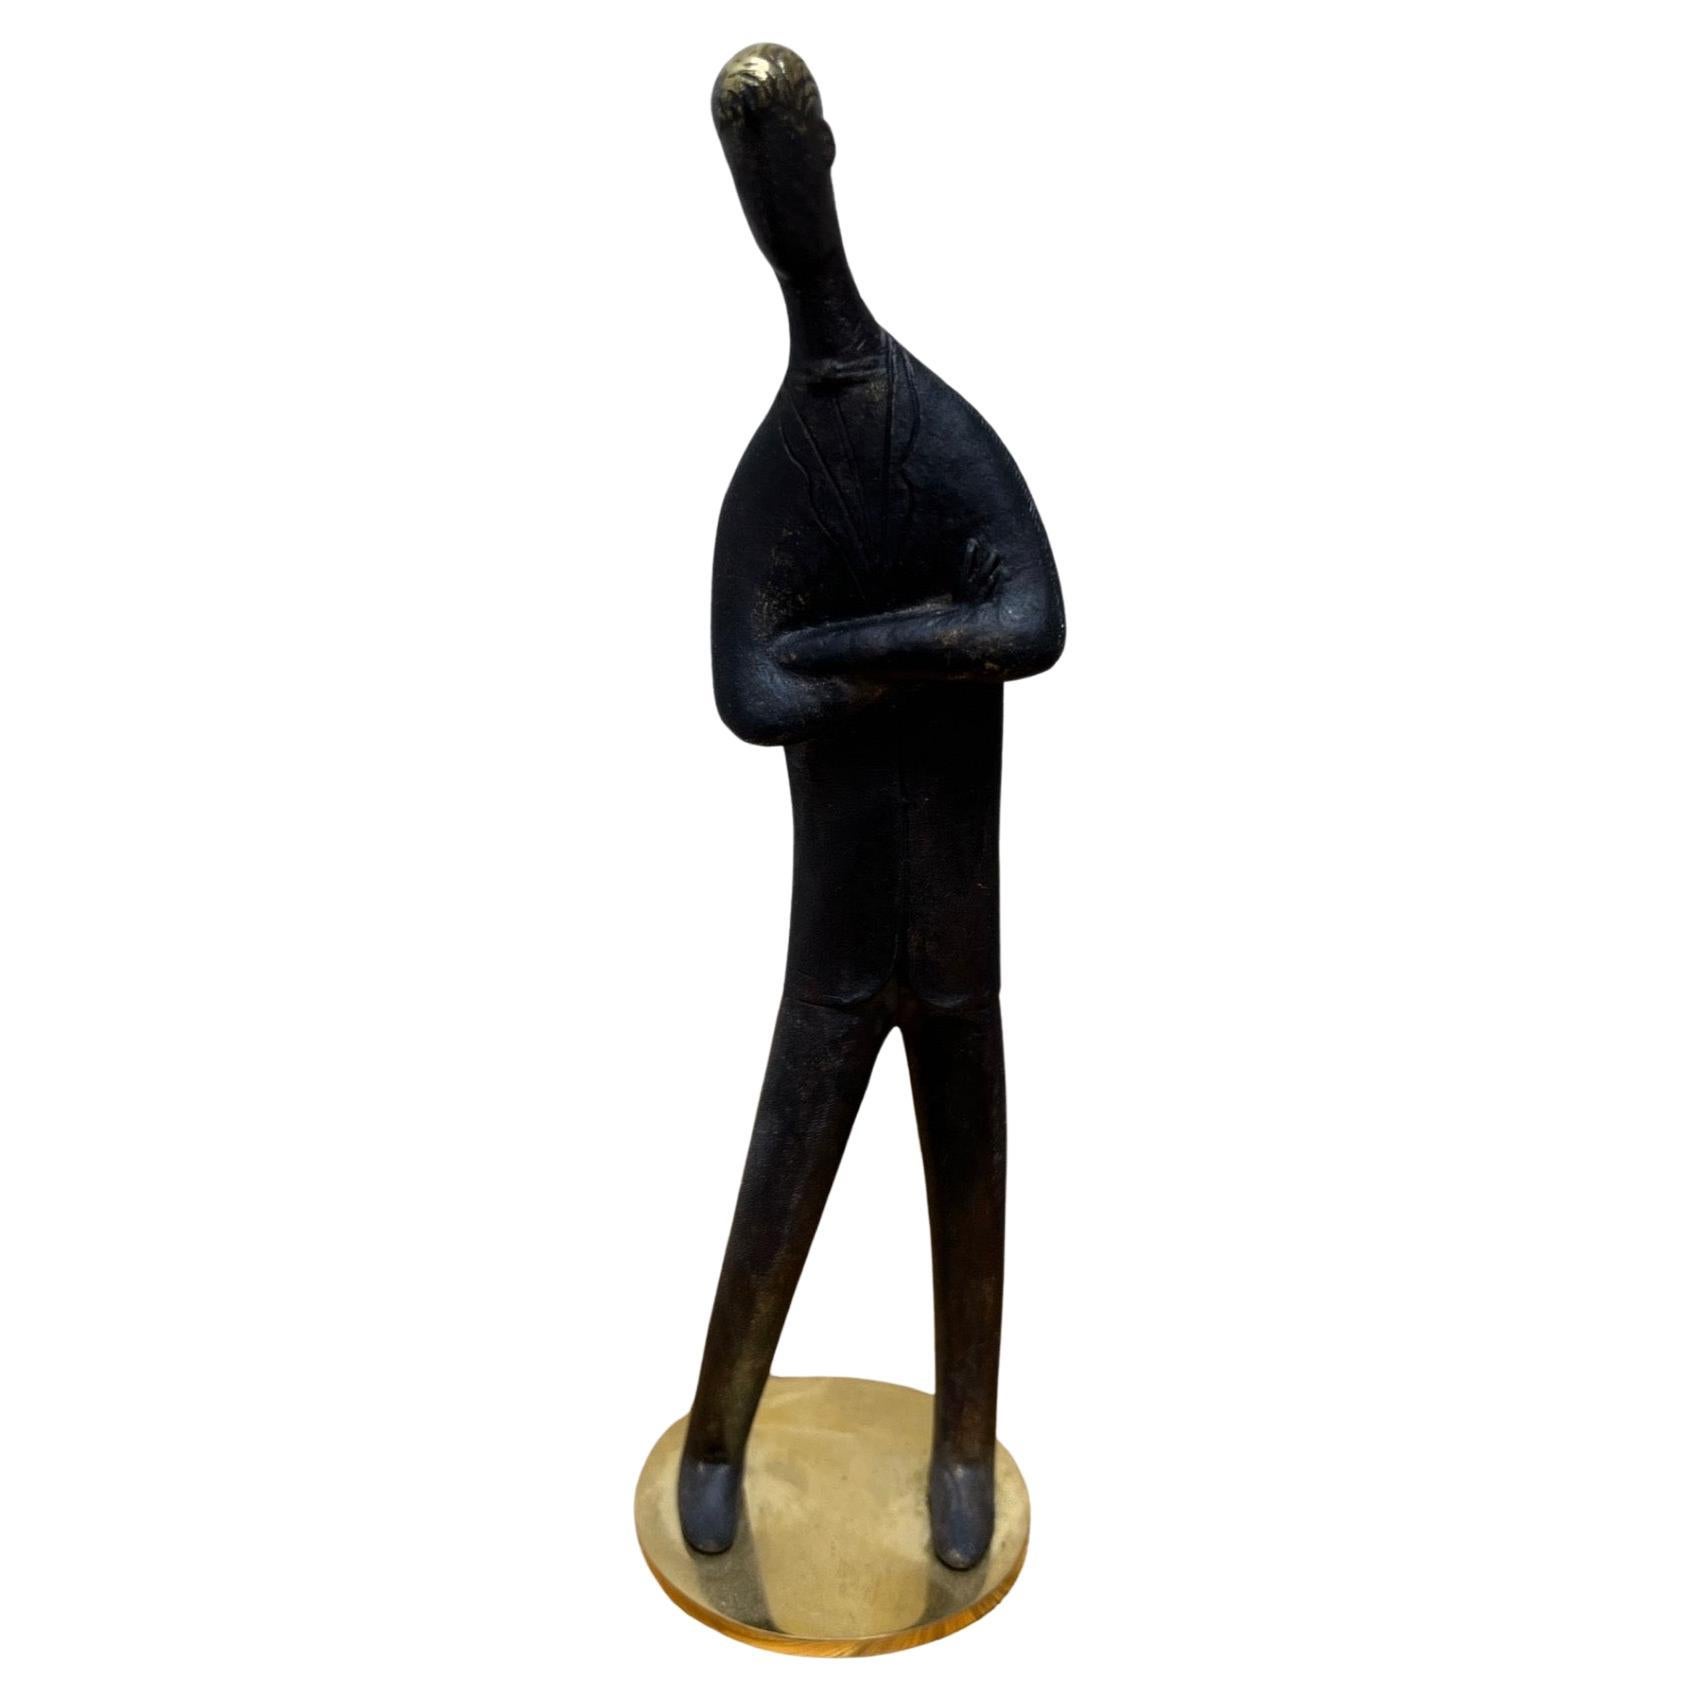 Patinierte Messing-Skulptur „Mein Sohn“ von Carl Aubock, #4752